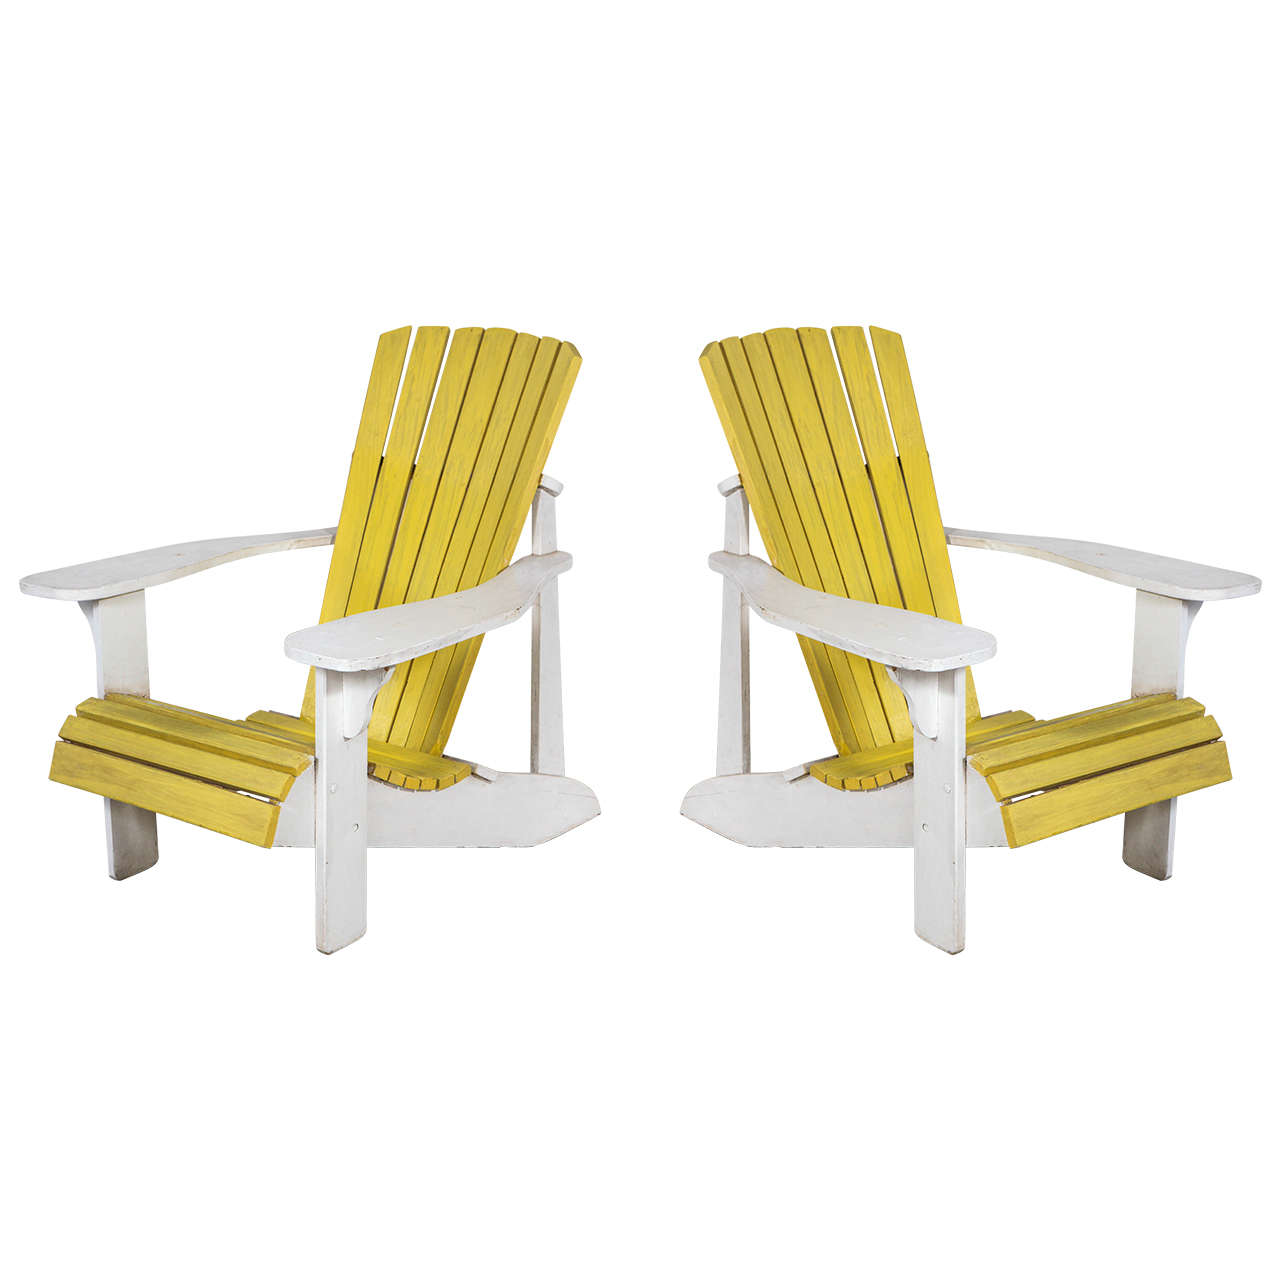 Pair of Vintage Painted Adirondack Chairs